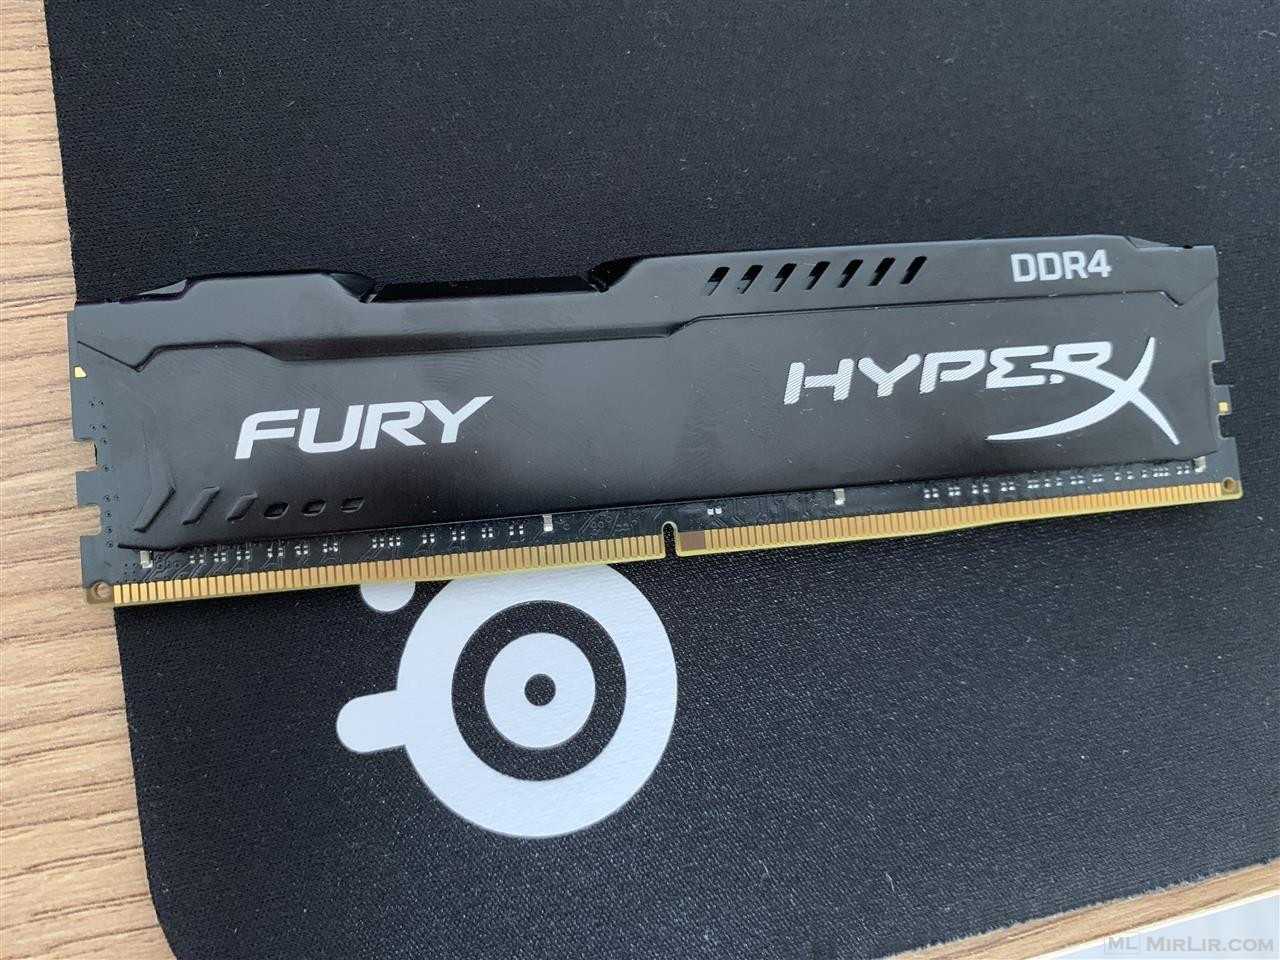 Fury HyperX DDR4 3200 CL18 16GB Ram